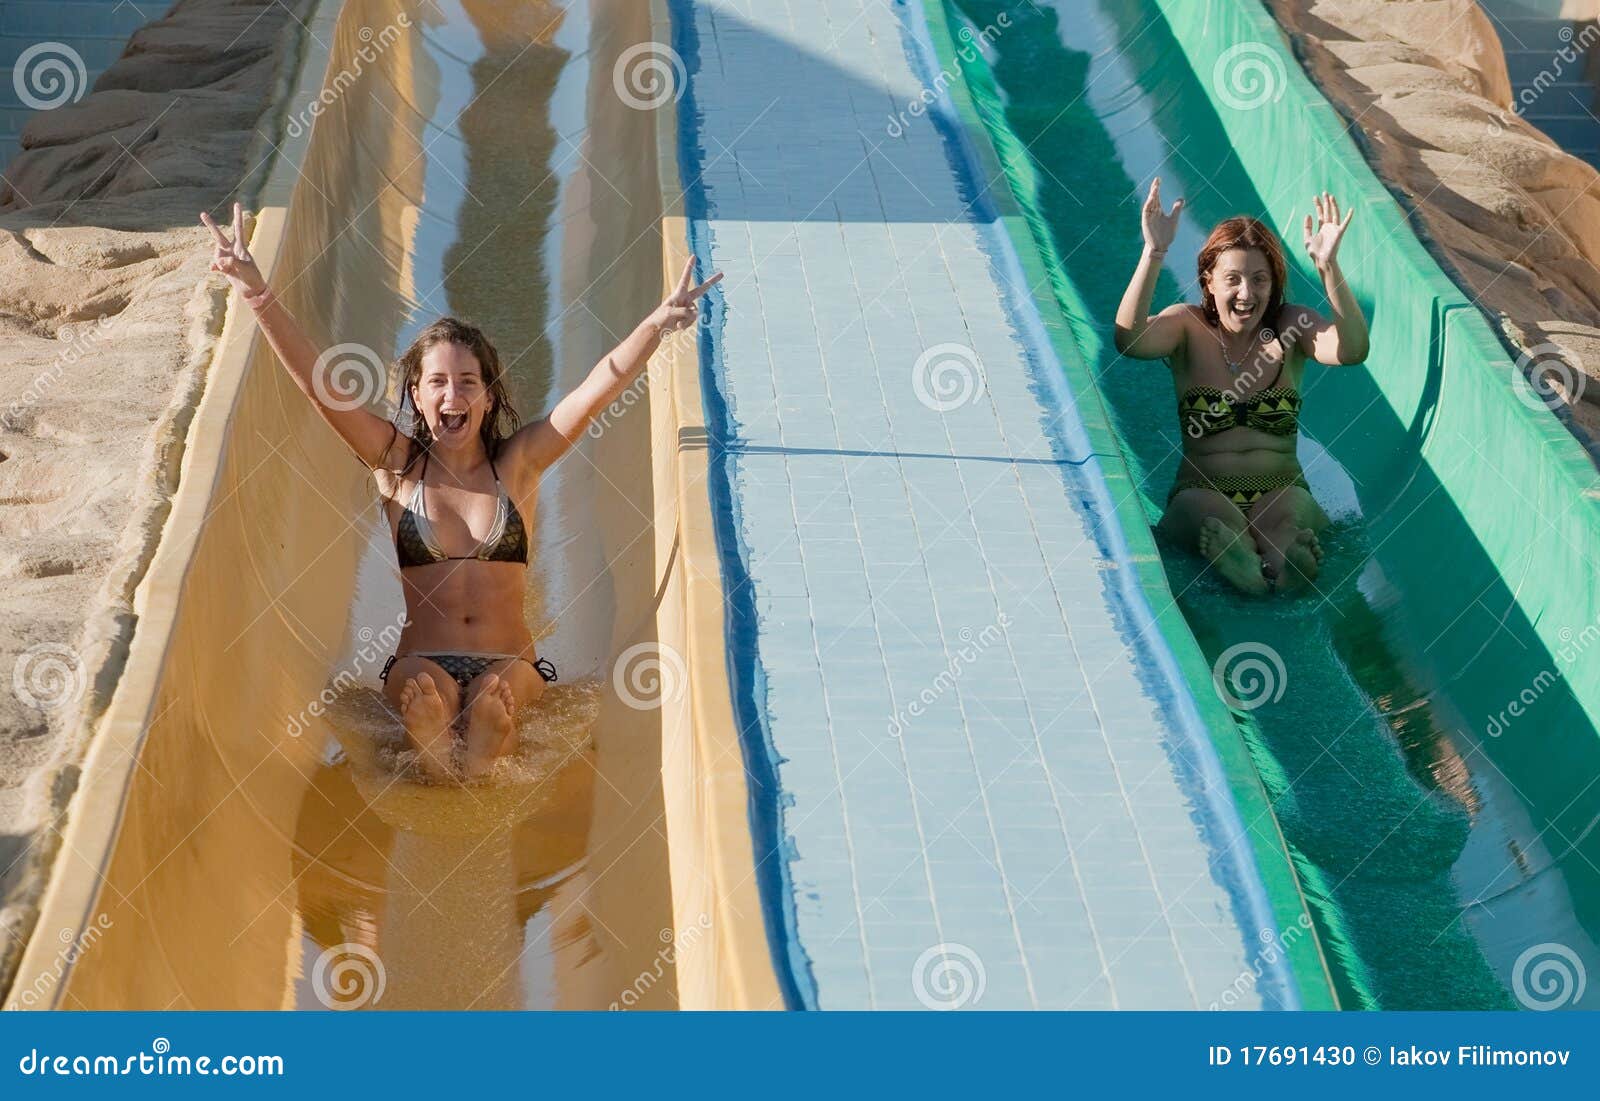 Bikini Vs Water Slide griffith twistys